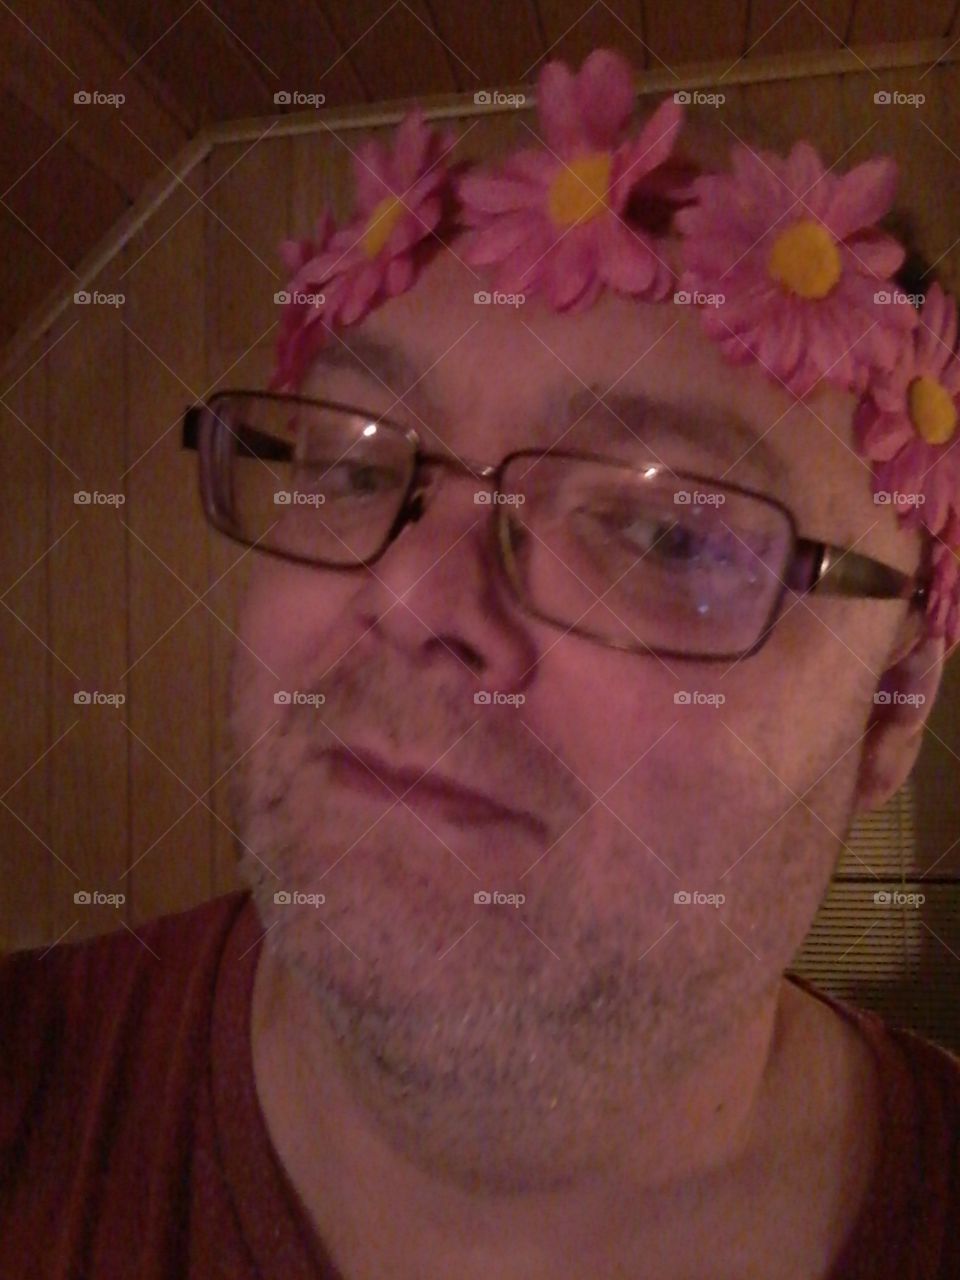 Hippie Hippies flowerpower flowerboy scherzhaft gag scherzfoto diadem stirnband blumen blumenschmuck Shooting selfie